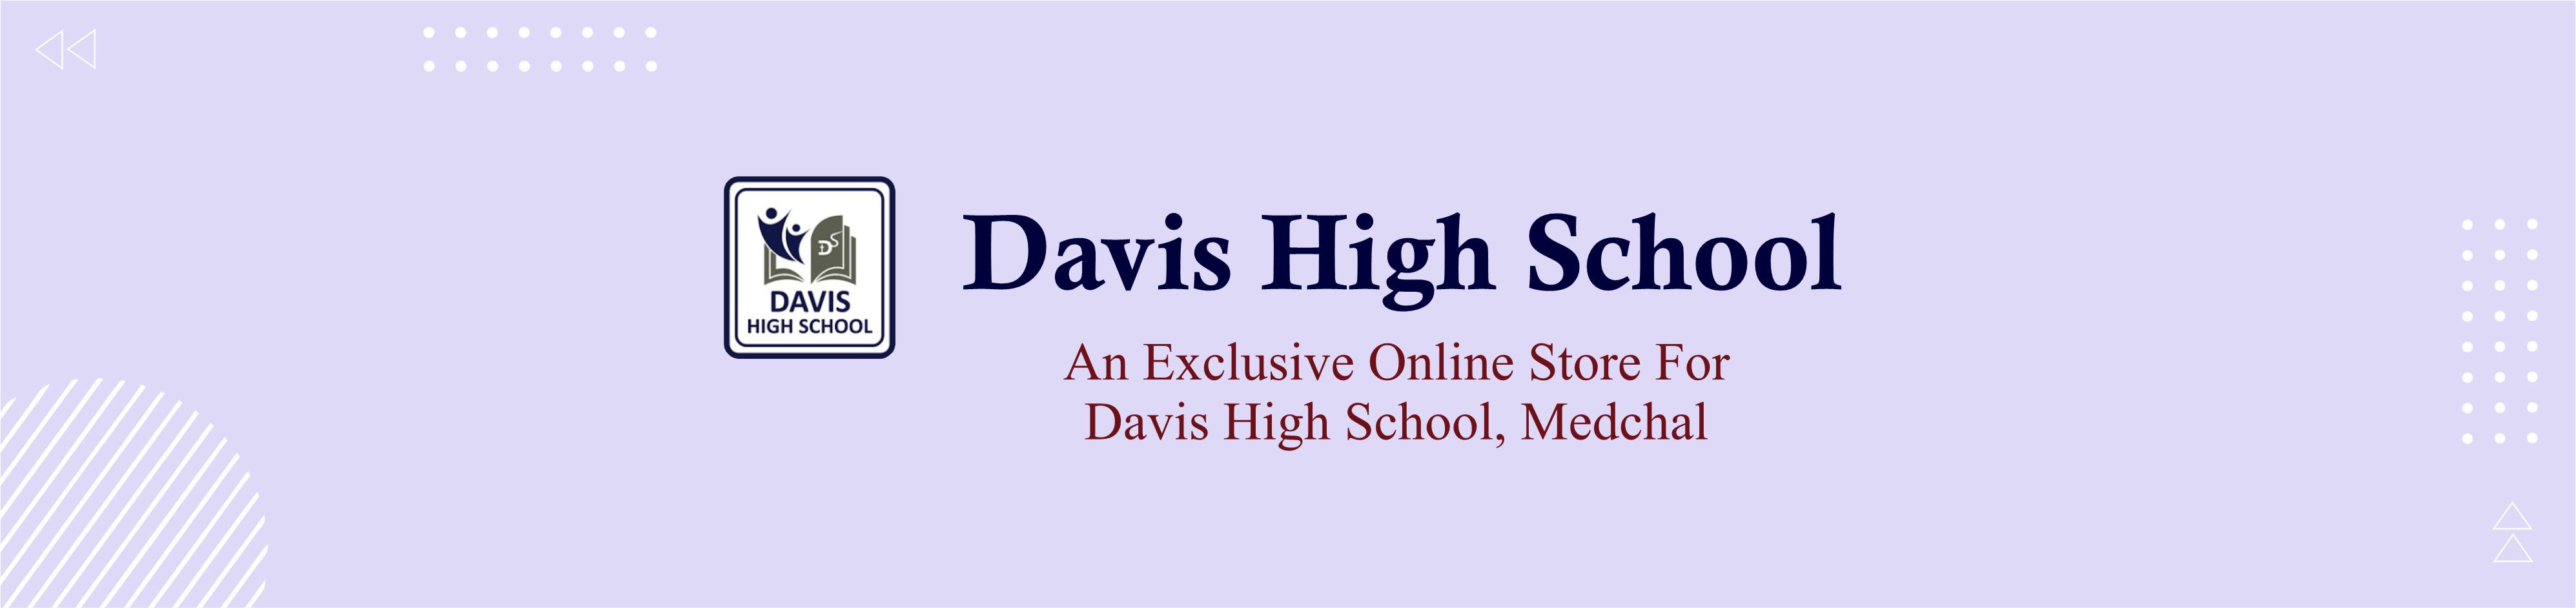 Davis banner 